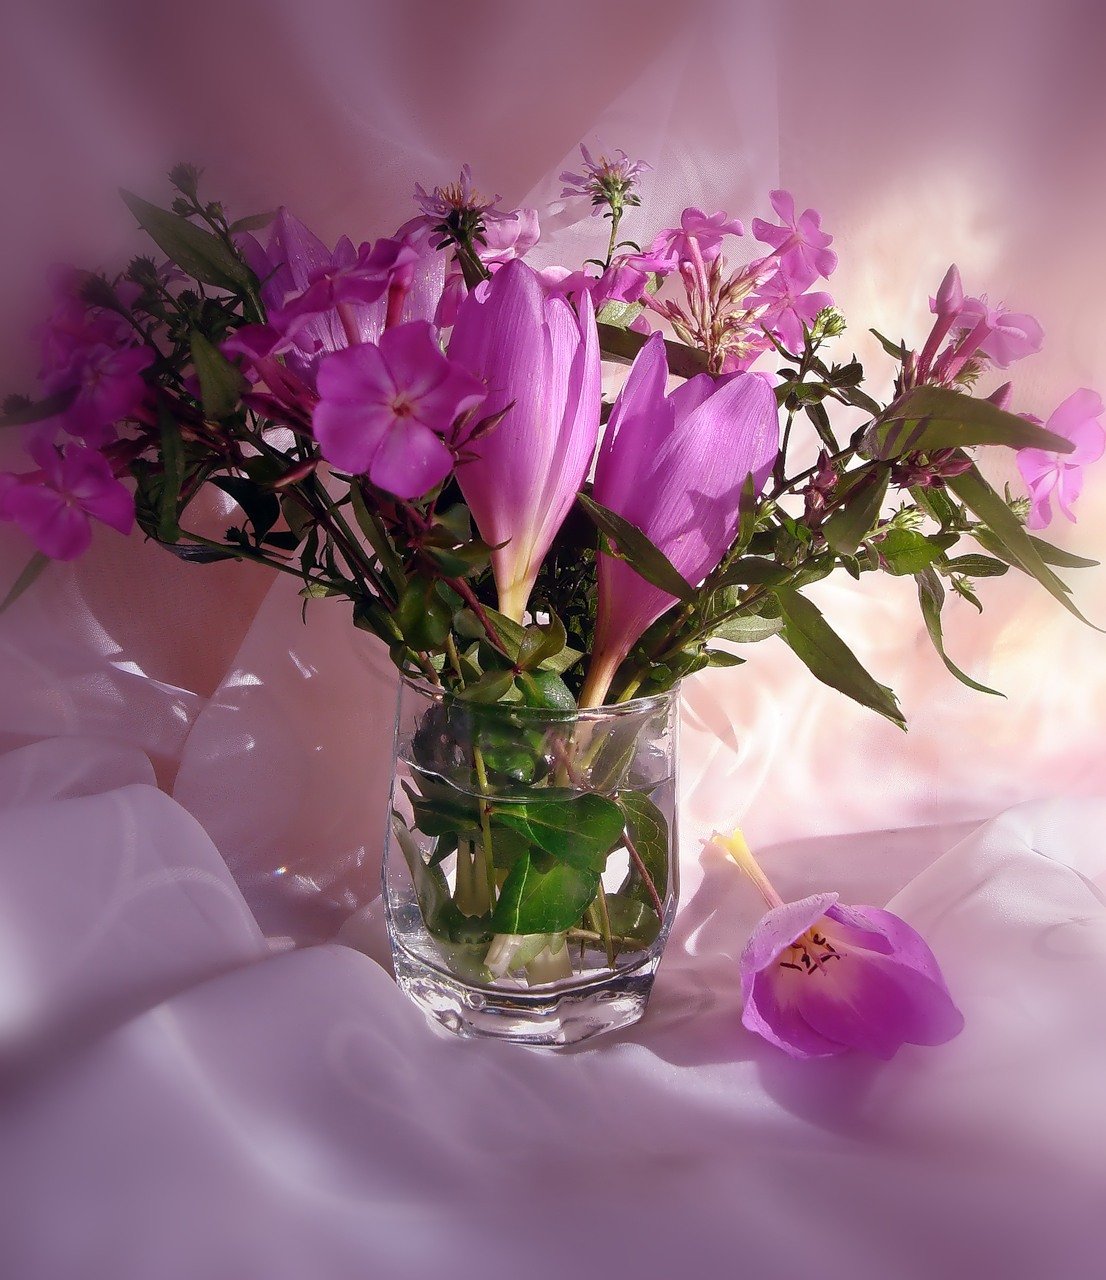 Картинка красивая с добрым вечером нежная. Цветы в вазе. Красивый букет в вазе. Красивые цветы в вазах. Натюрморт.